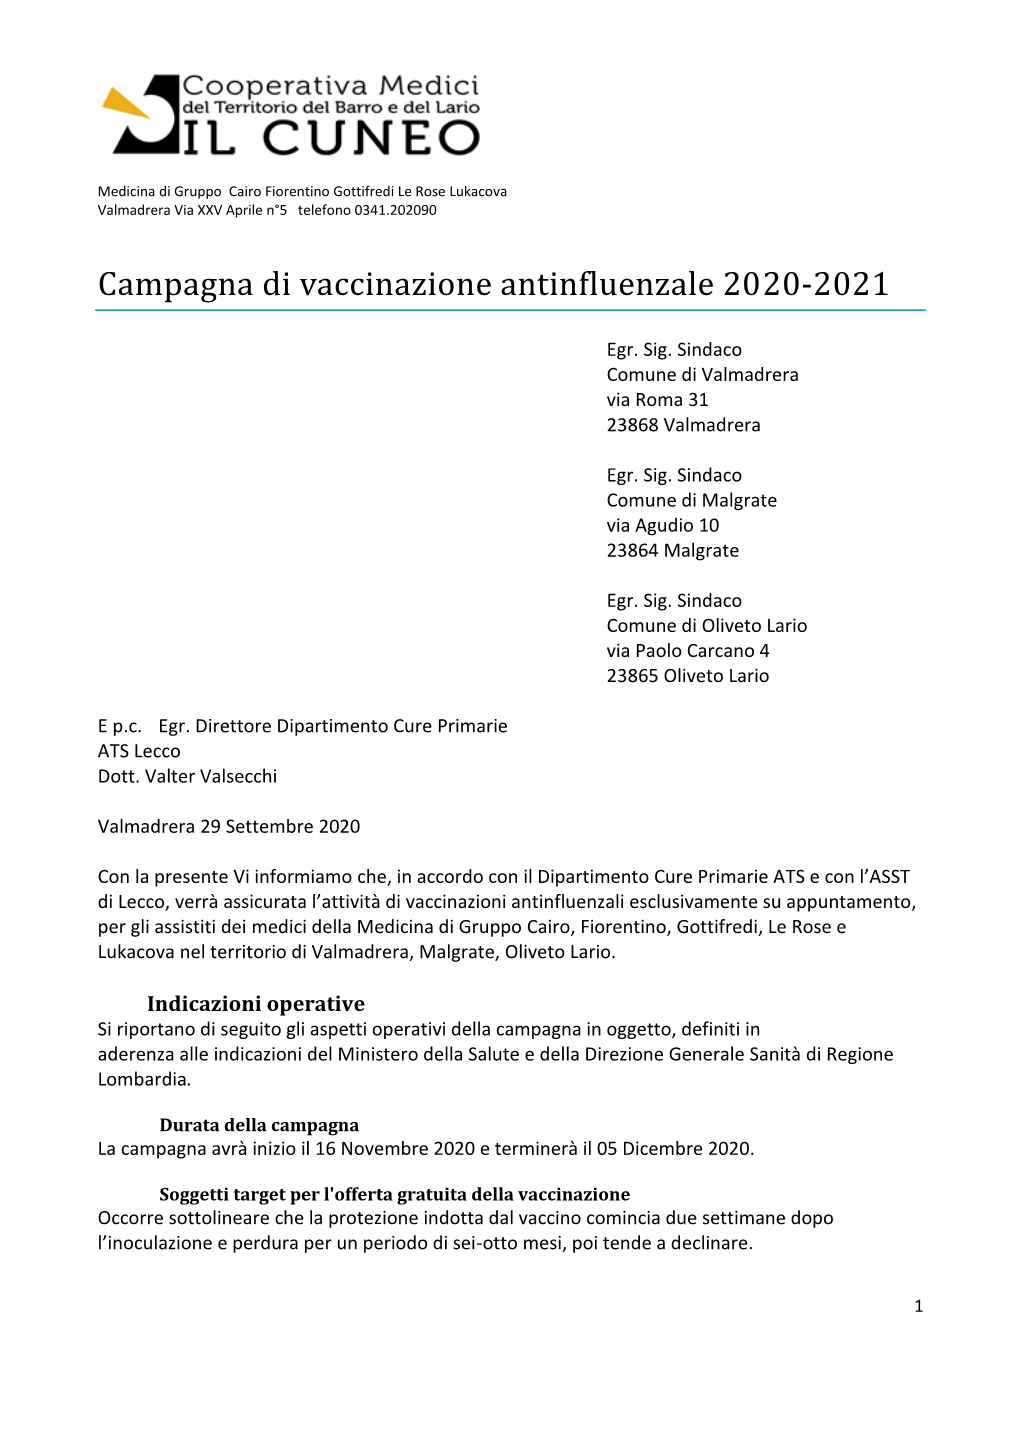 Campagna Di Vaccinazione Antinfluenzale 2020-2021